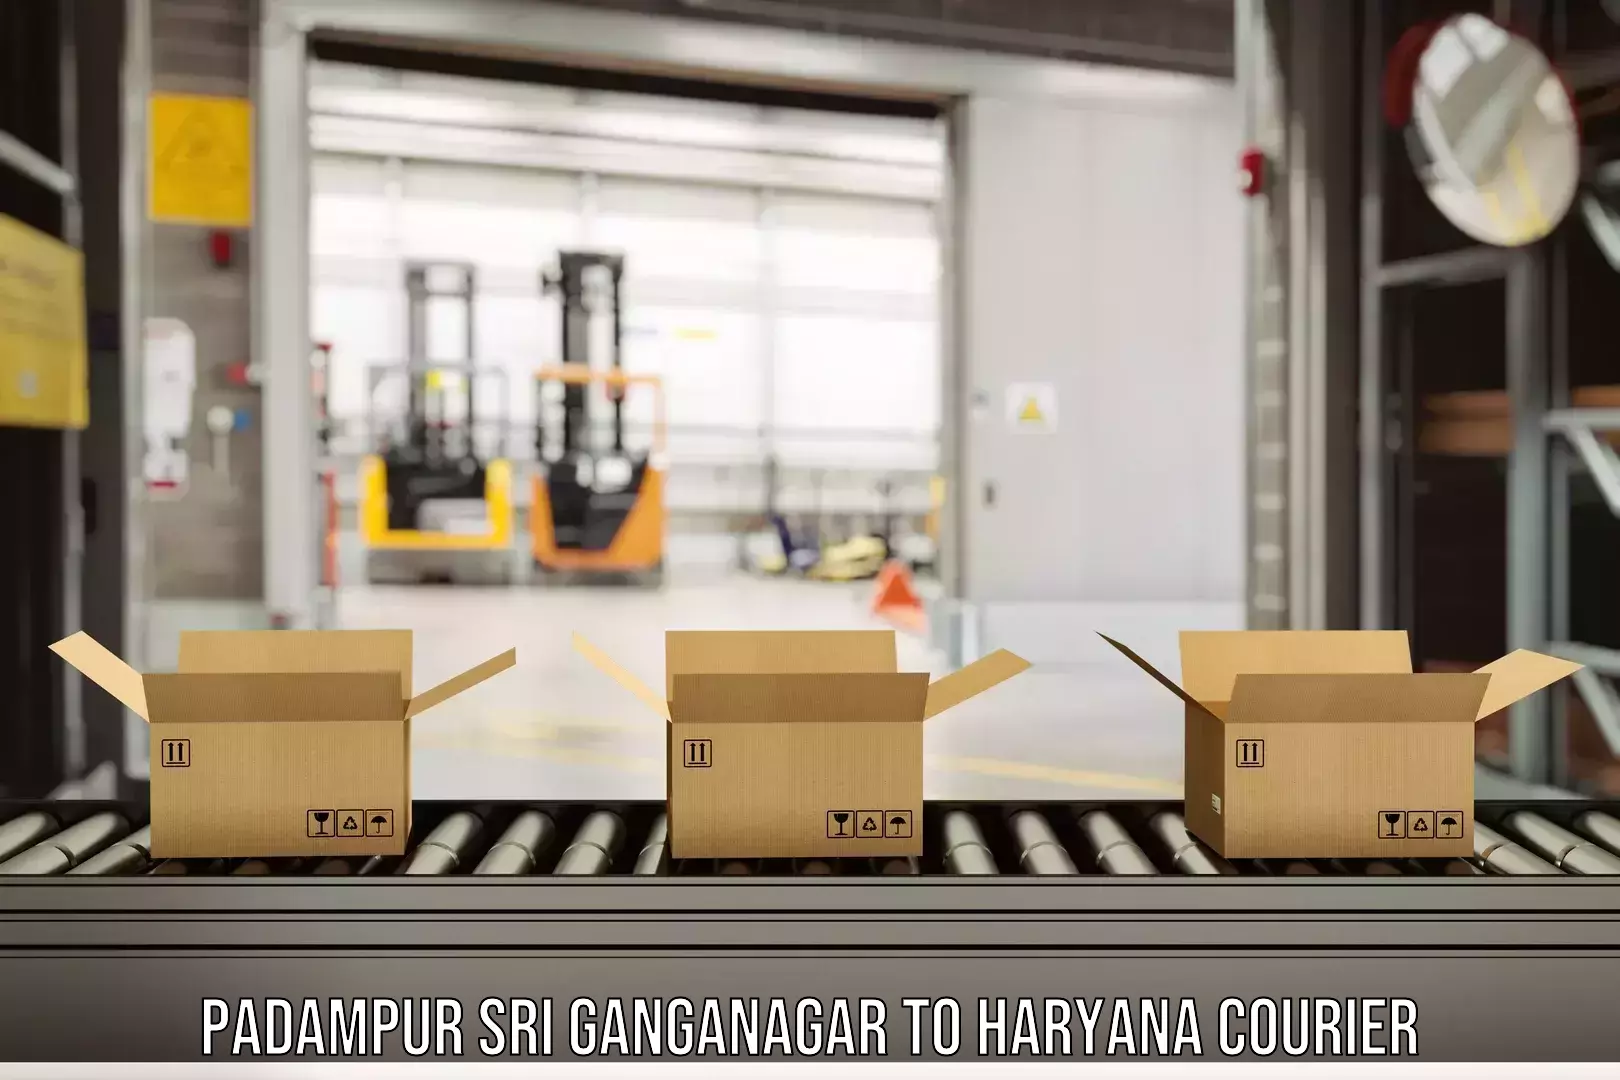 Express delivery capabilities Padampur Sri Ganganagar to Panchkula